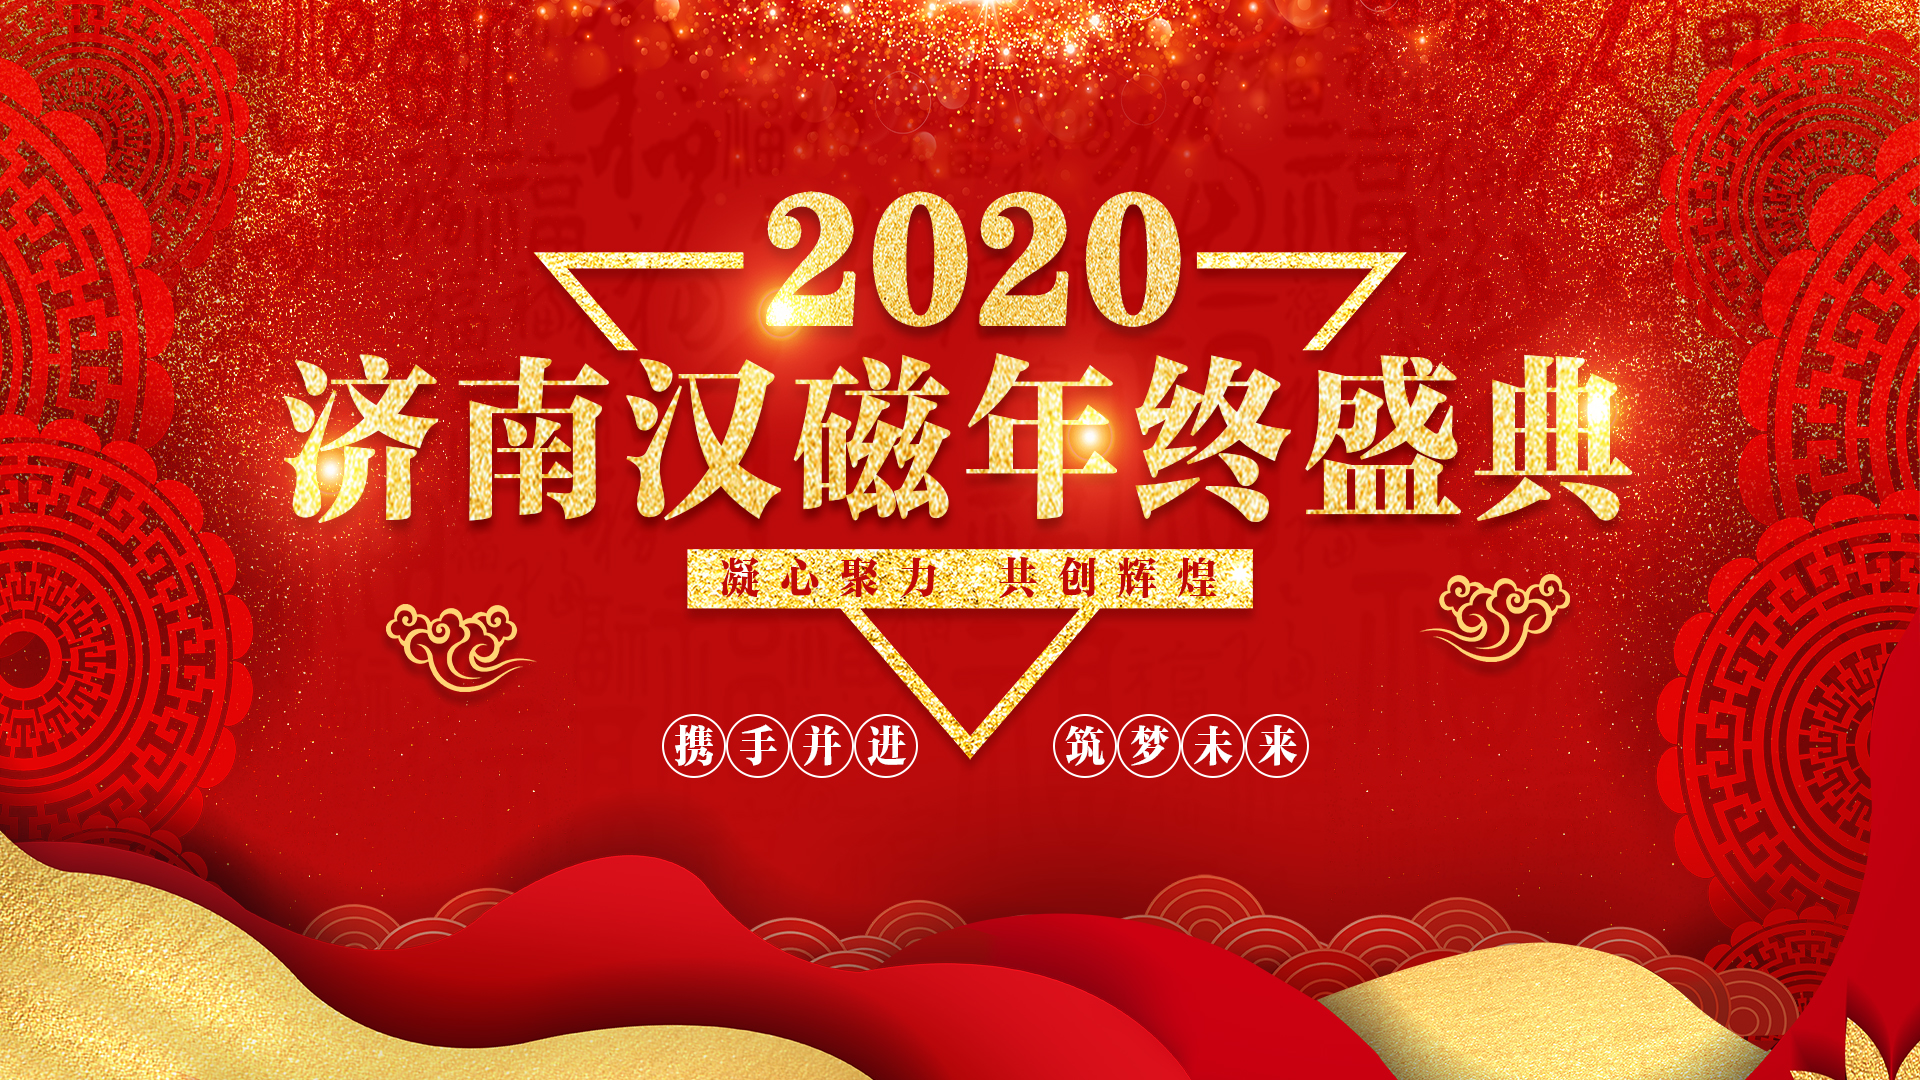 濟南漢磁2020年終盛典